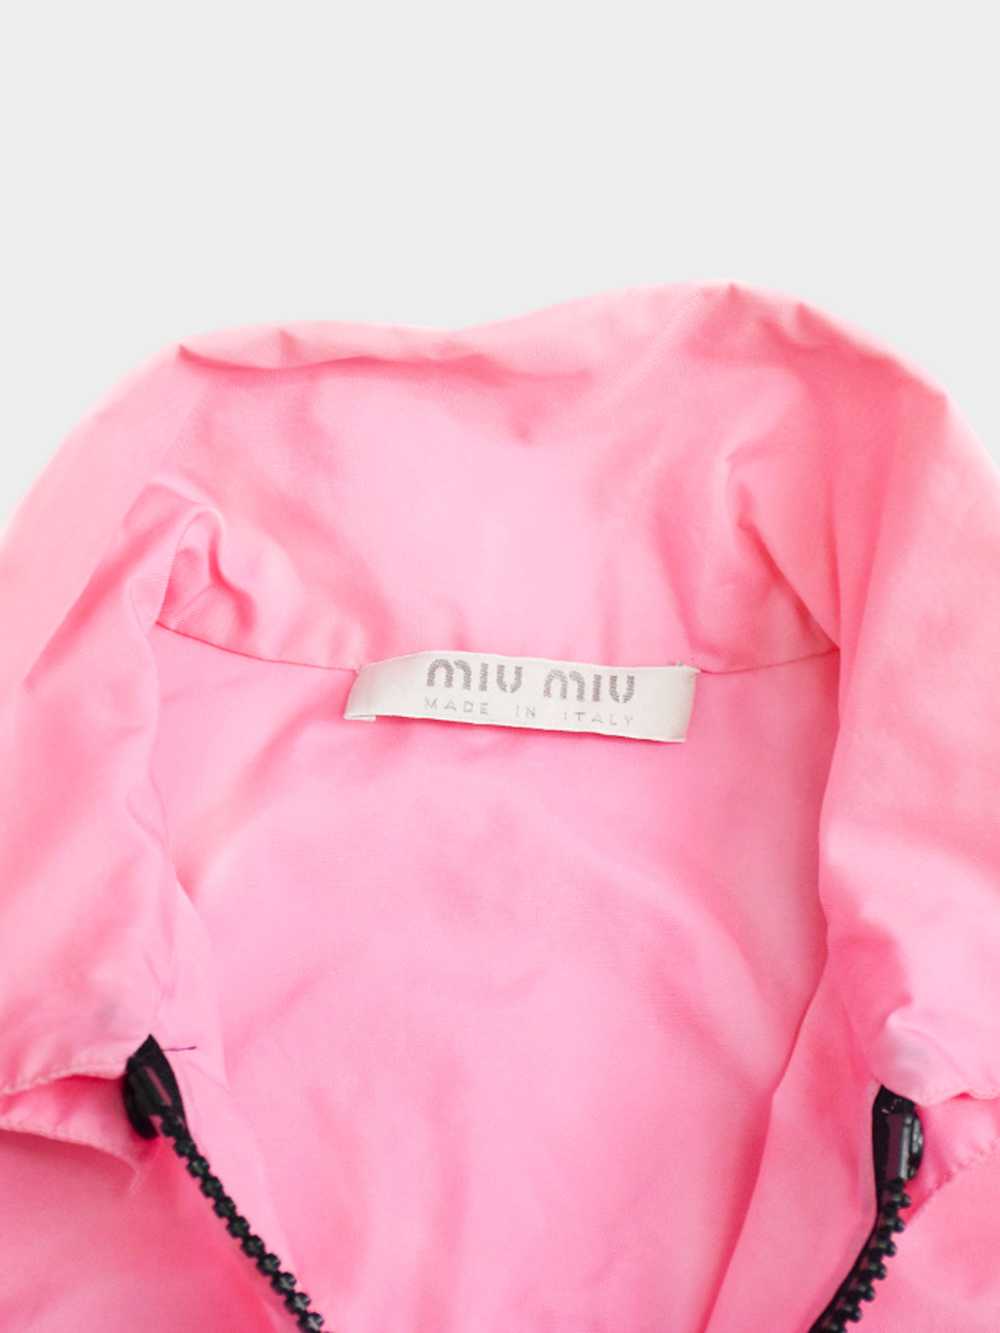 Miu Miu SS 1999 Pink Polyester Jacket - image 3